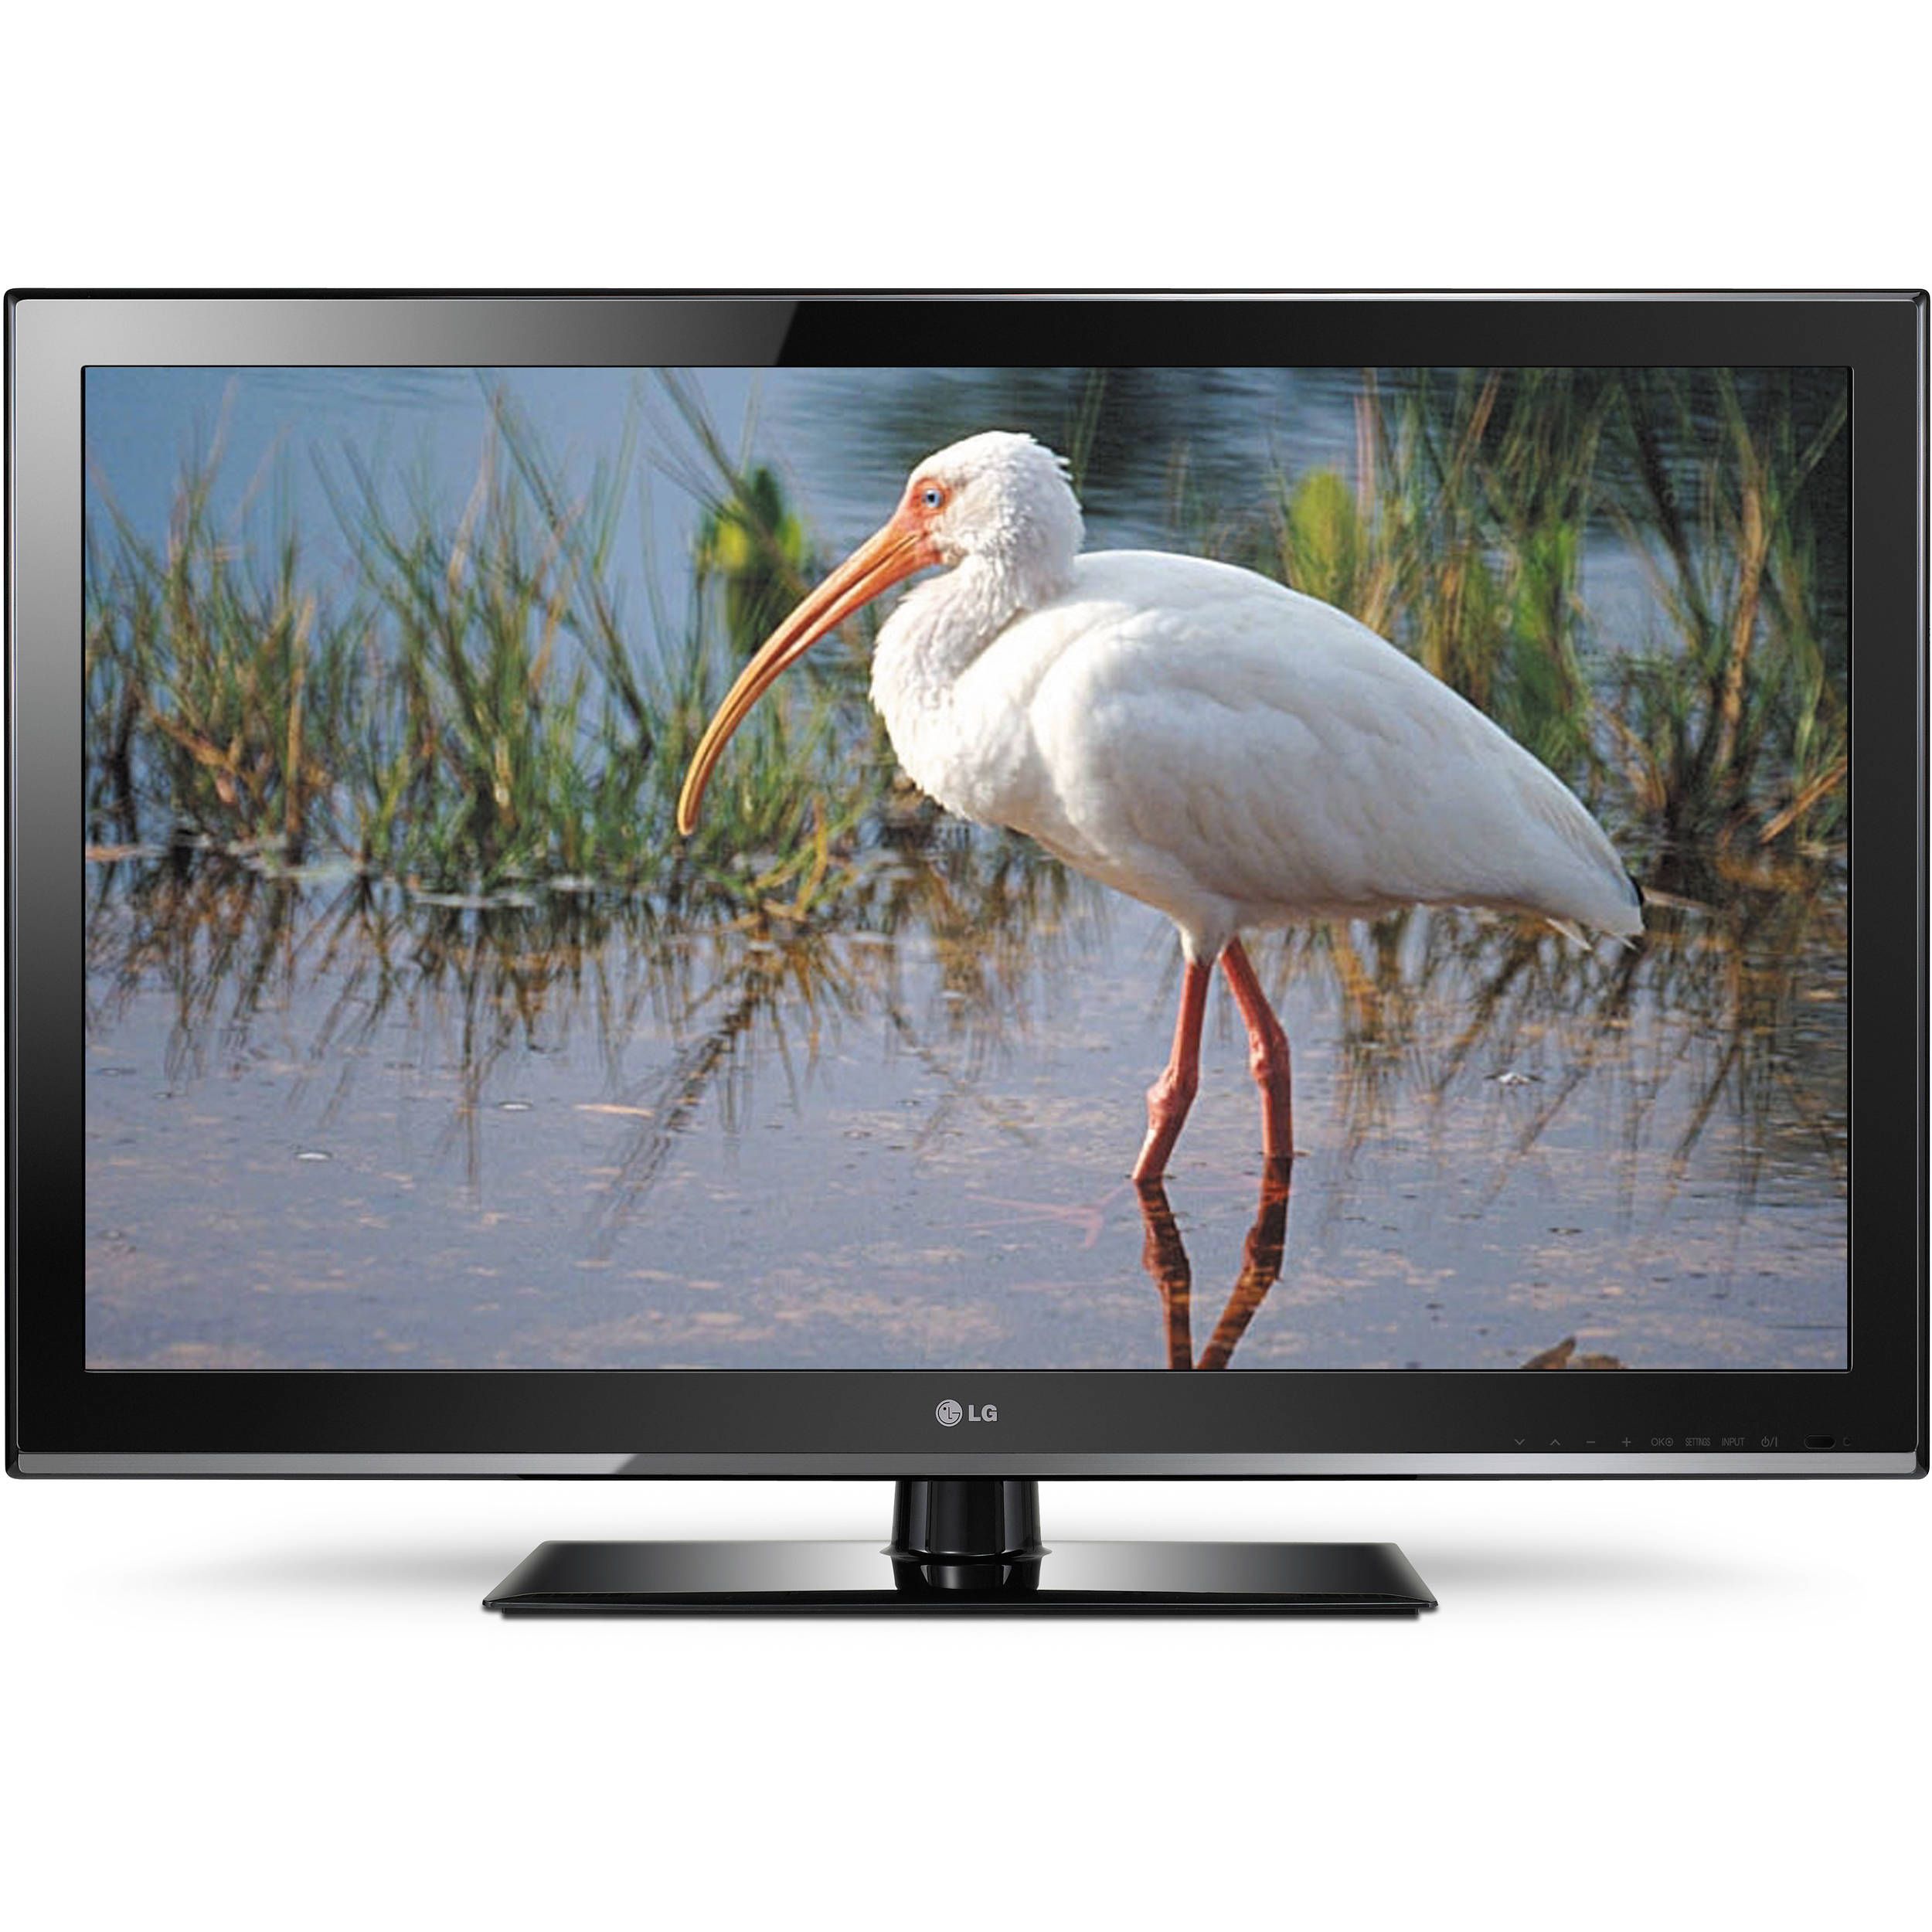 LCD TV HD 32 - 32CS460